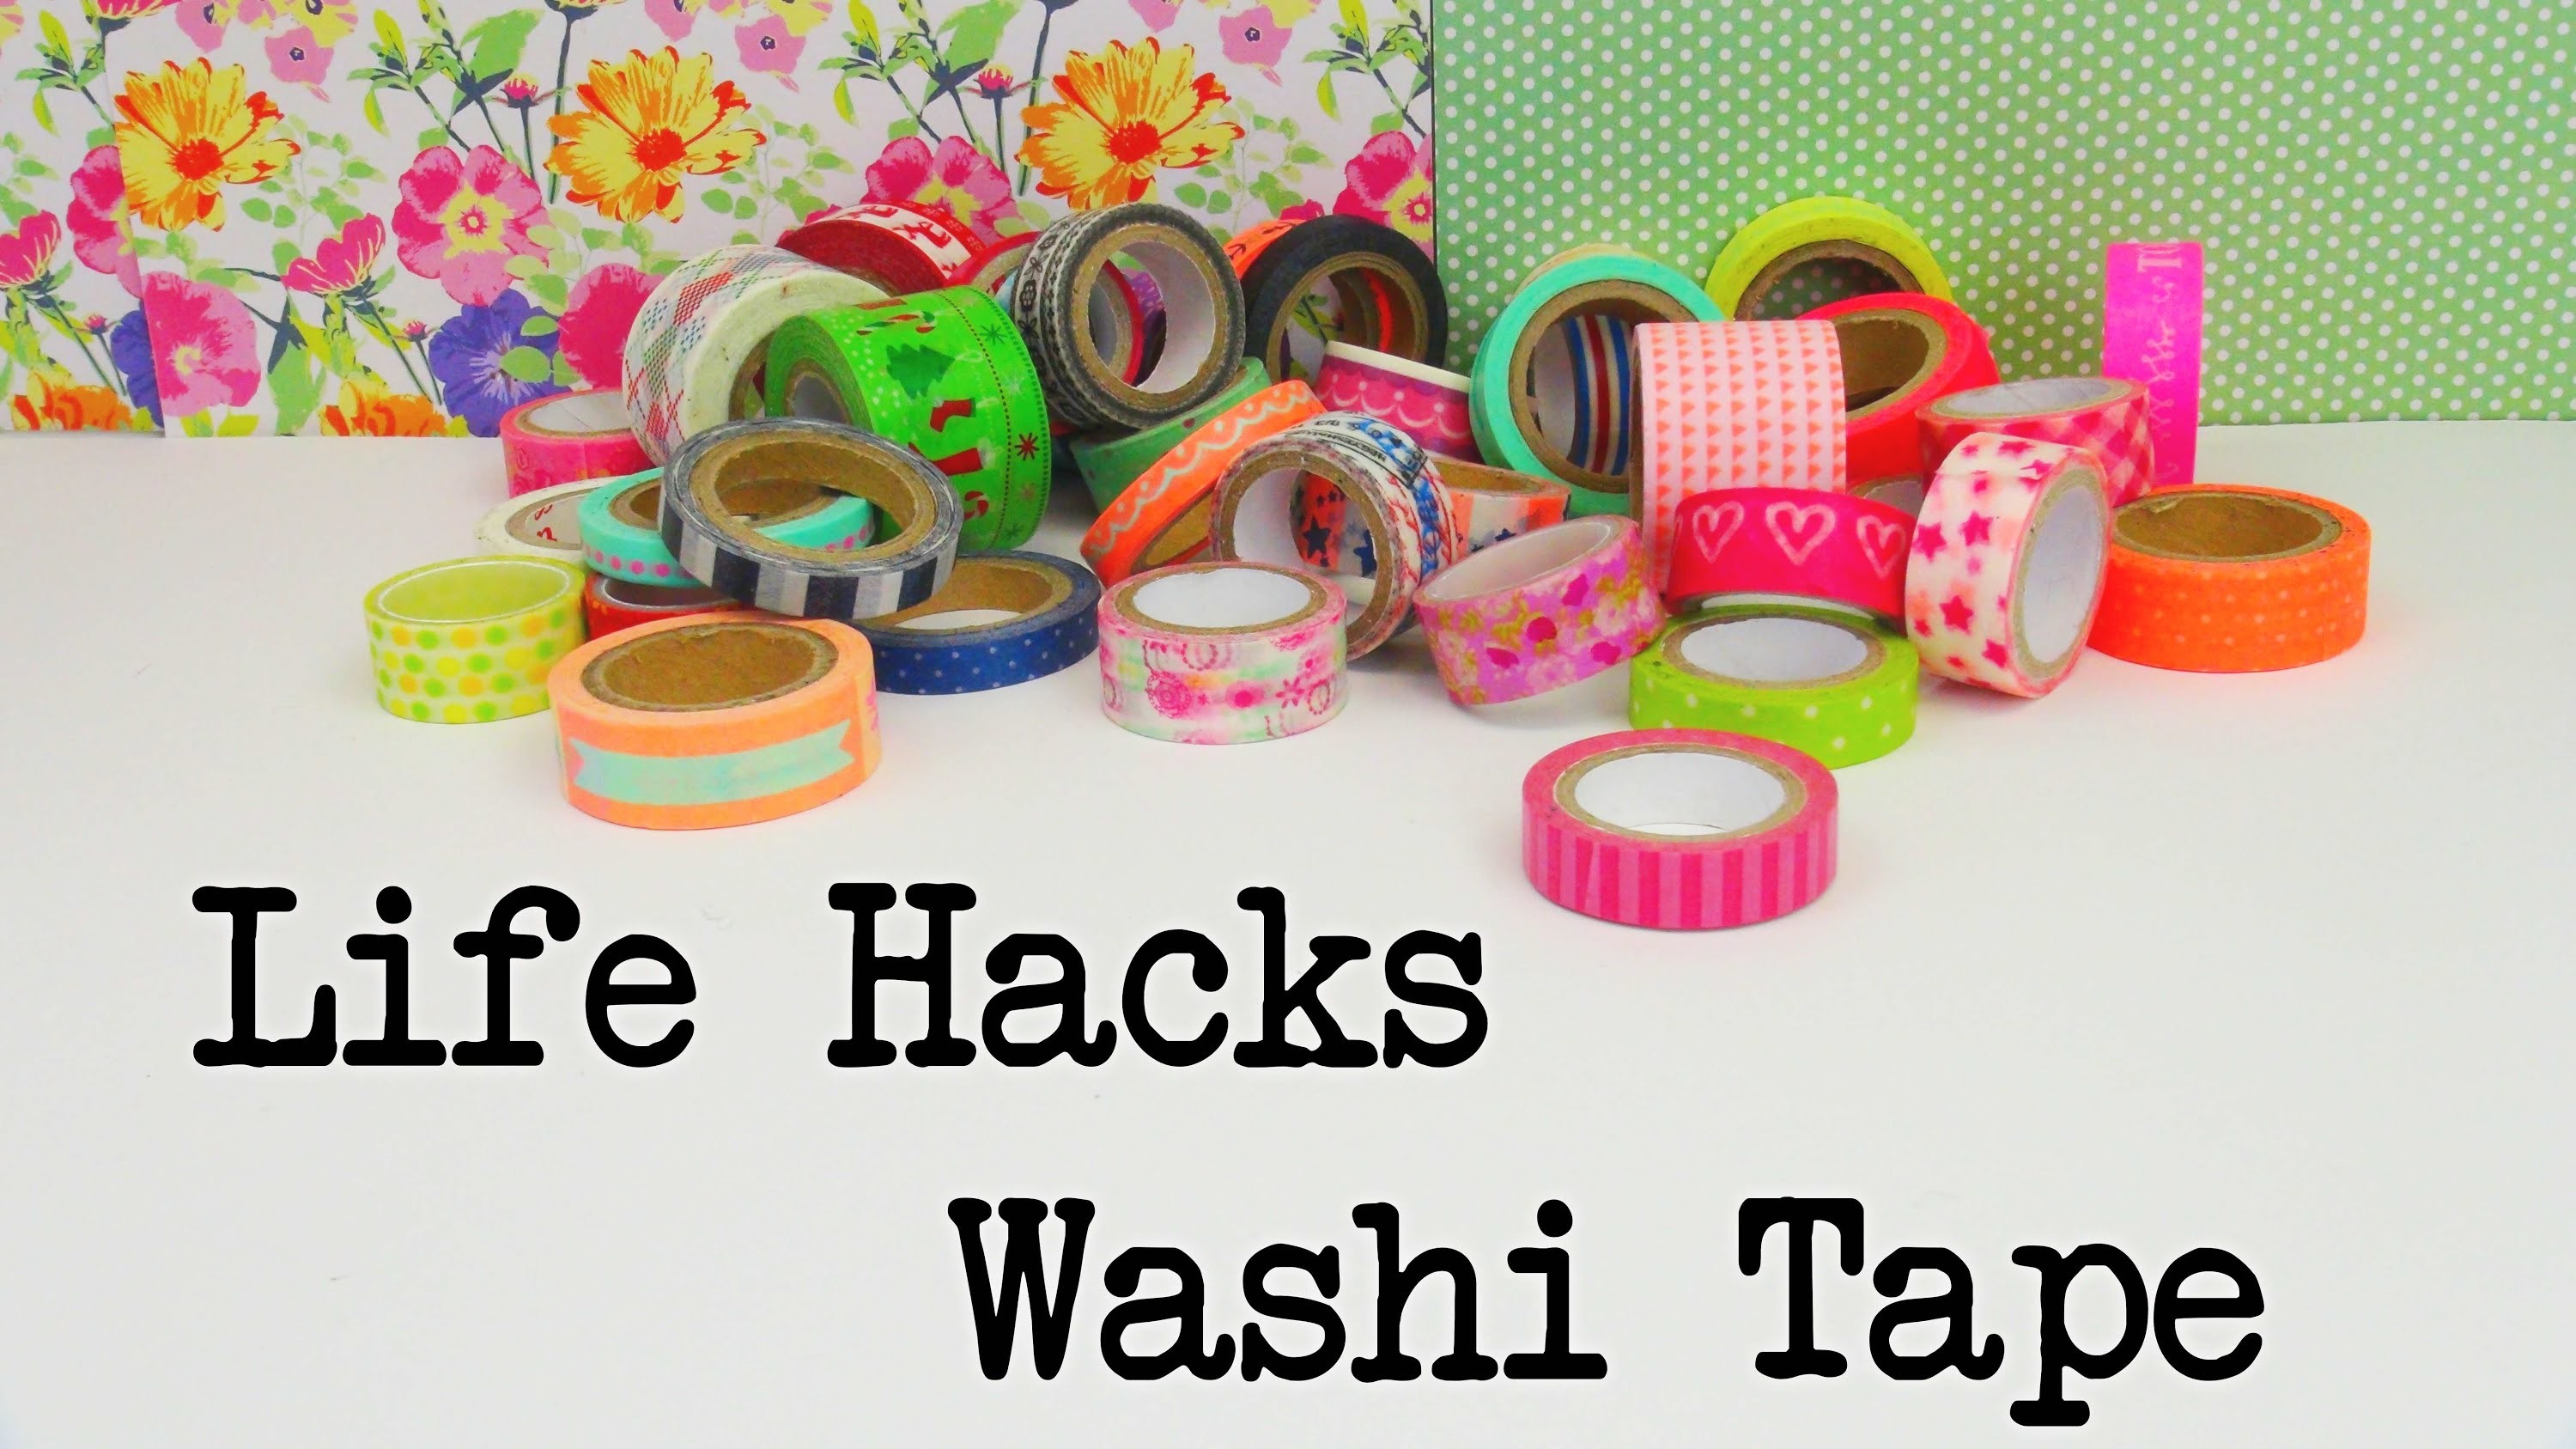 Life Hacks Top 5: Washi Tape Life Hacks. Tipps und Tricks mit Washi Tape Anleitung | deutsch